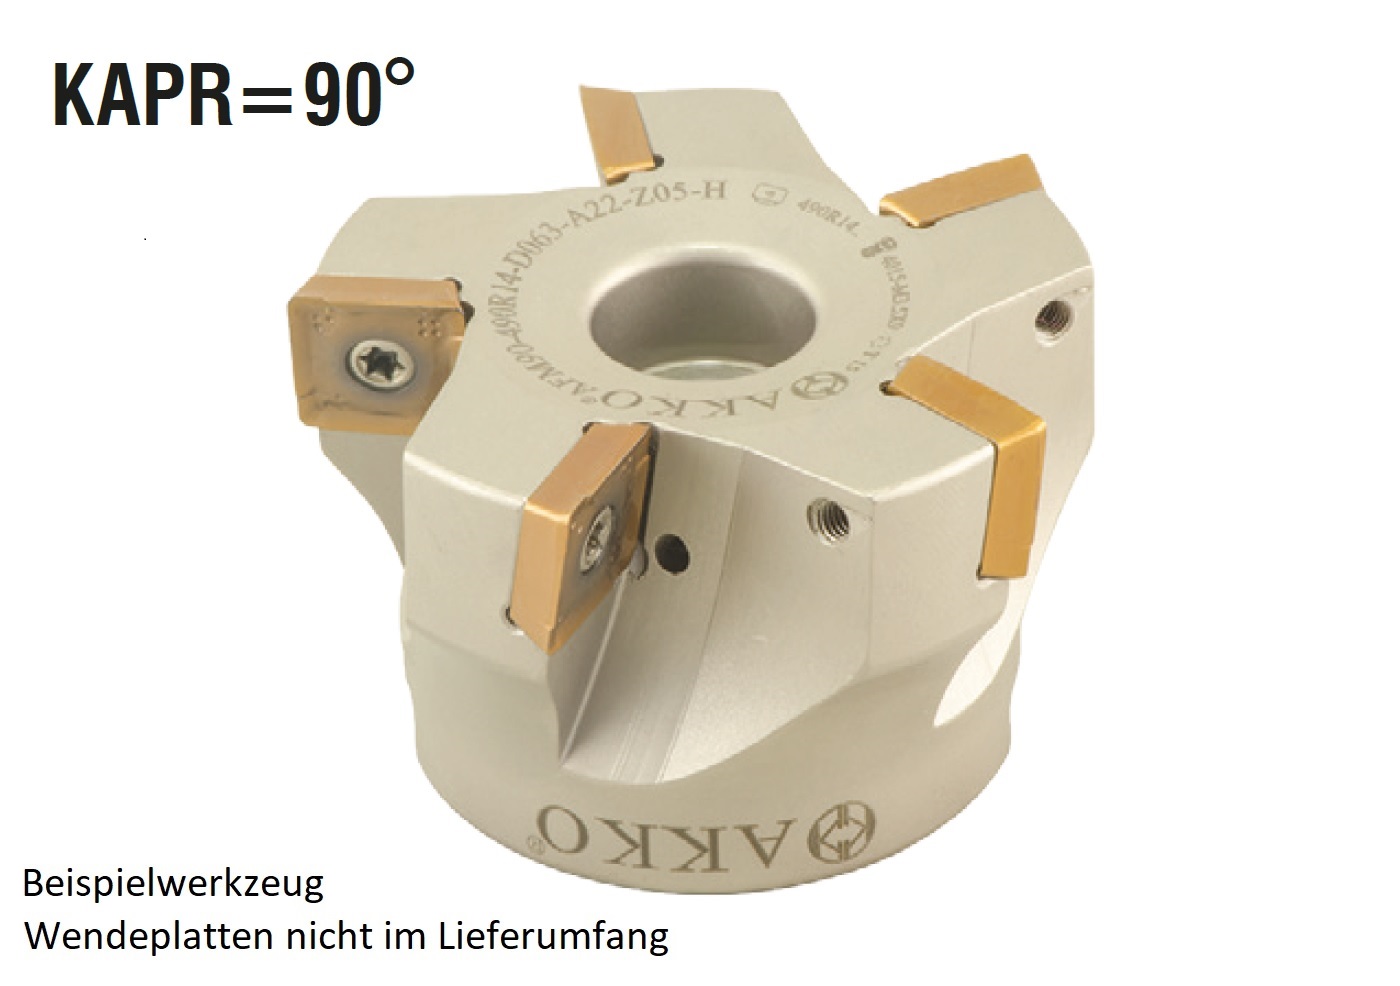 AKKO-Eckmesserkopf ø 160 mm, 90° Anstellwinkel, kompatibel mit Sandvik 490R 1404..
Aufnahmebohrung ø 40 mm (Typ C), ohne Innenkühlung, Z=12